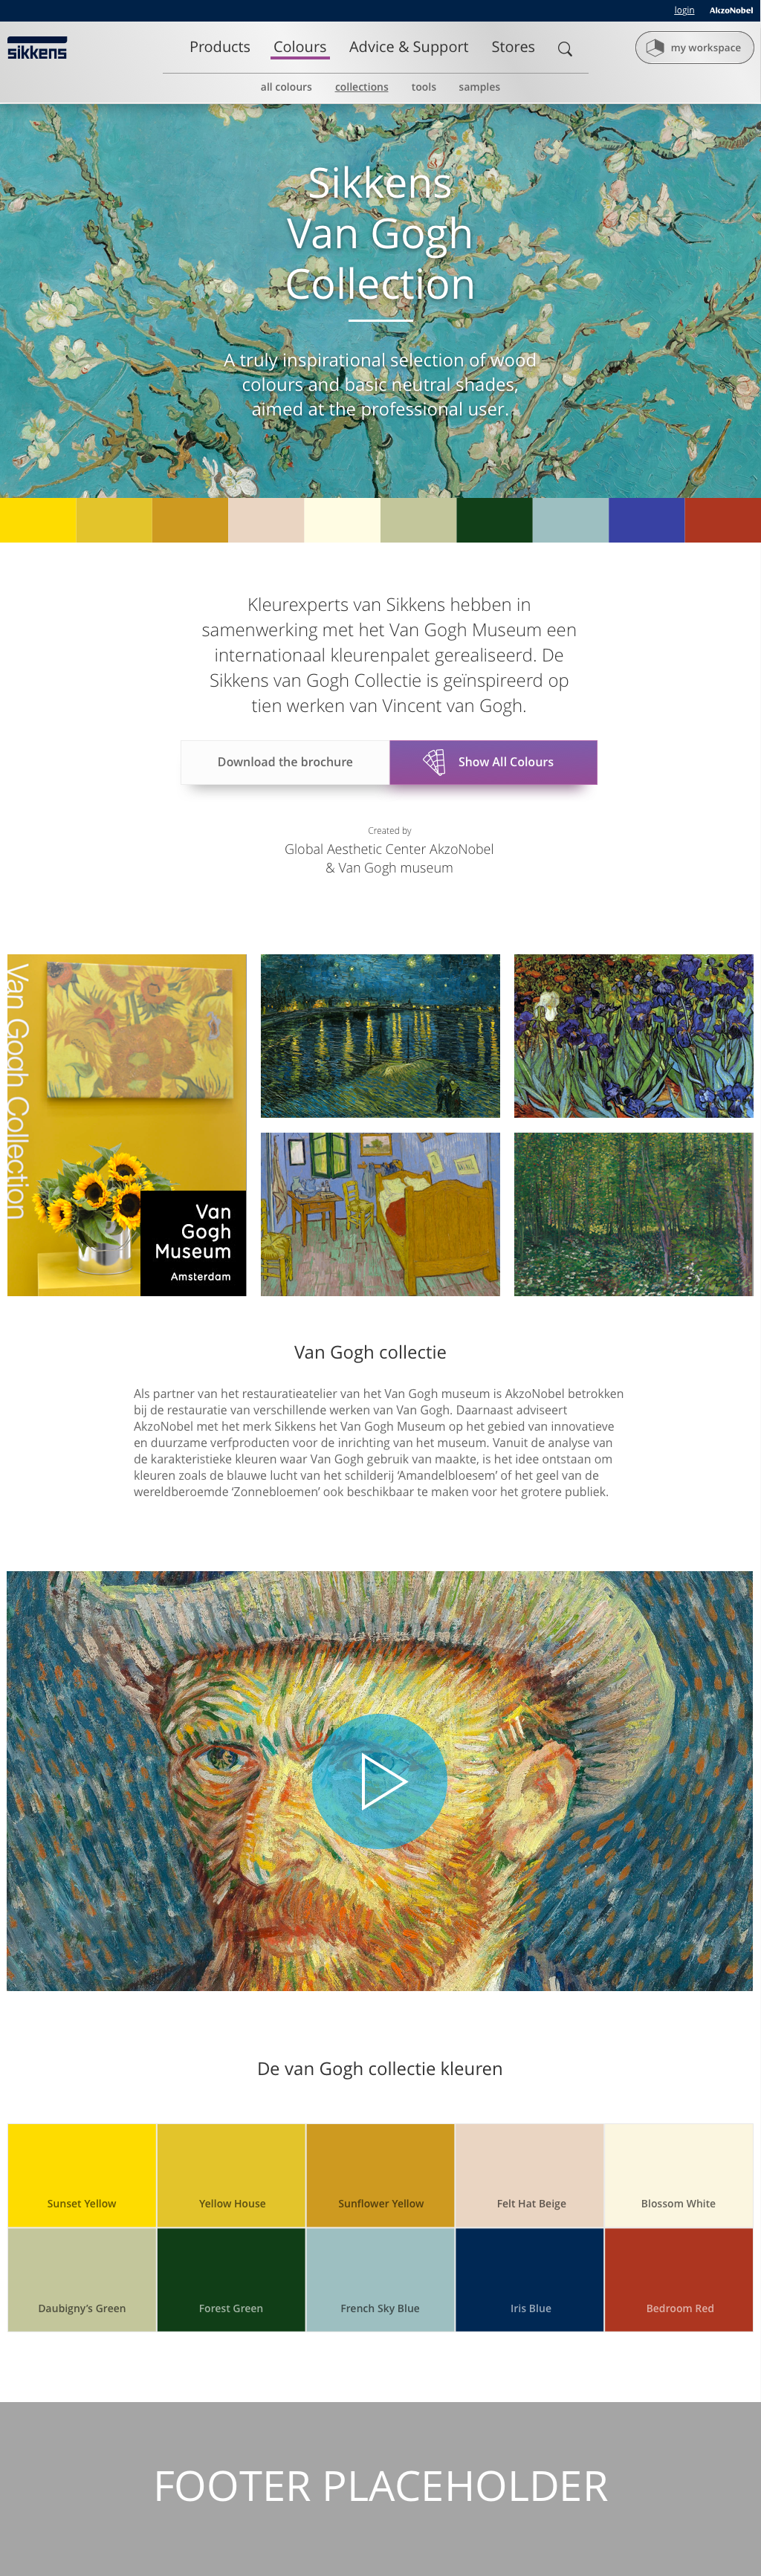 01_AkzoNobel-Painters-Desktop-Collections-Details